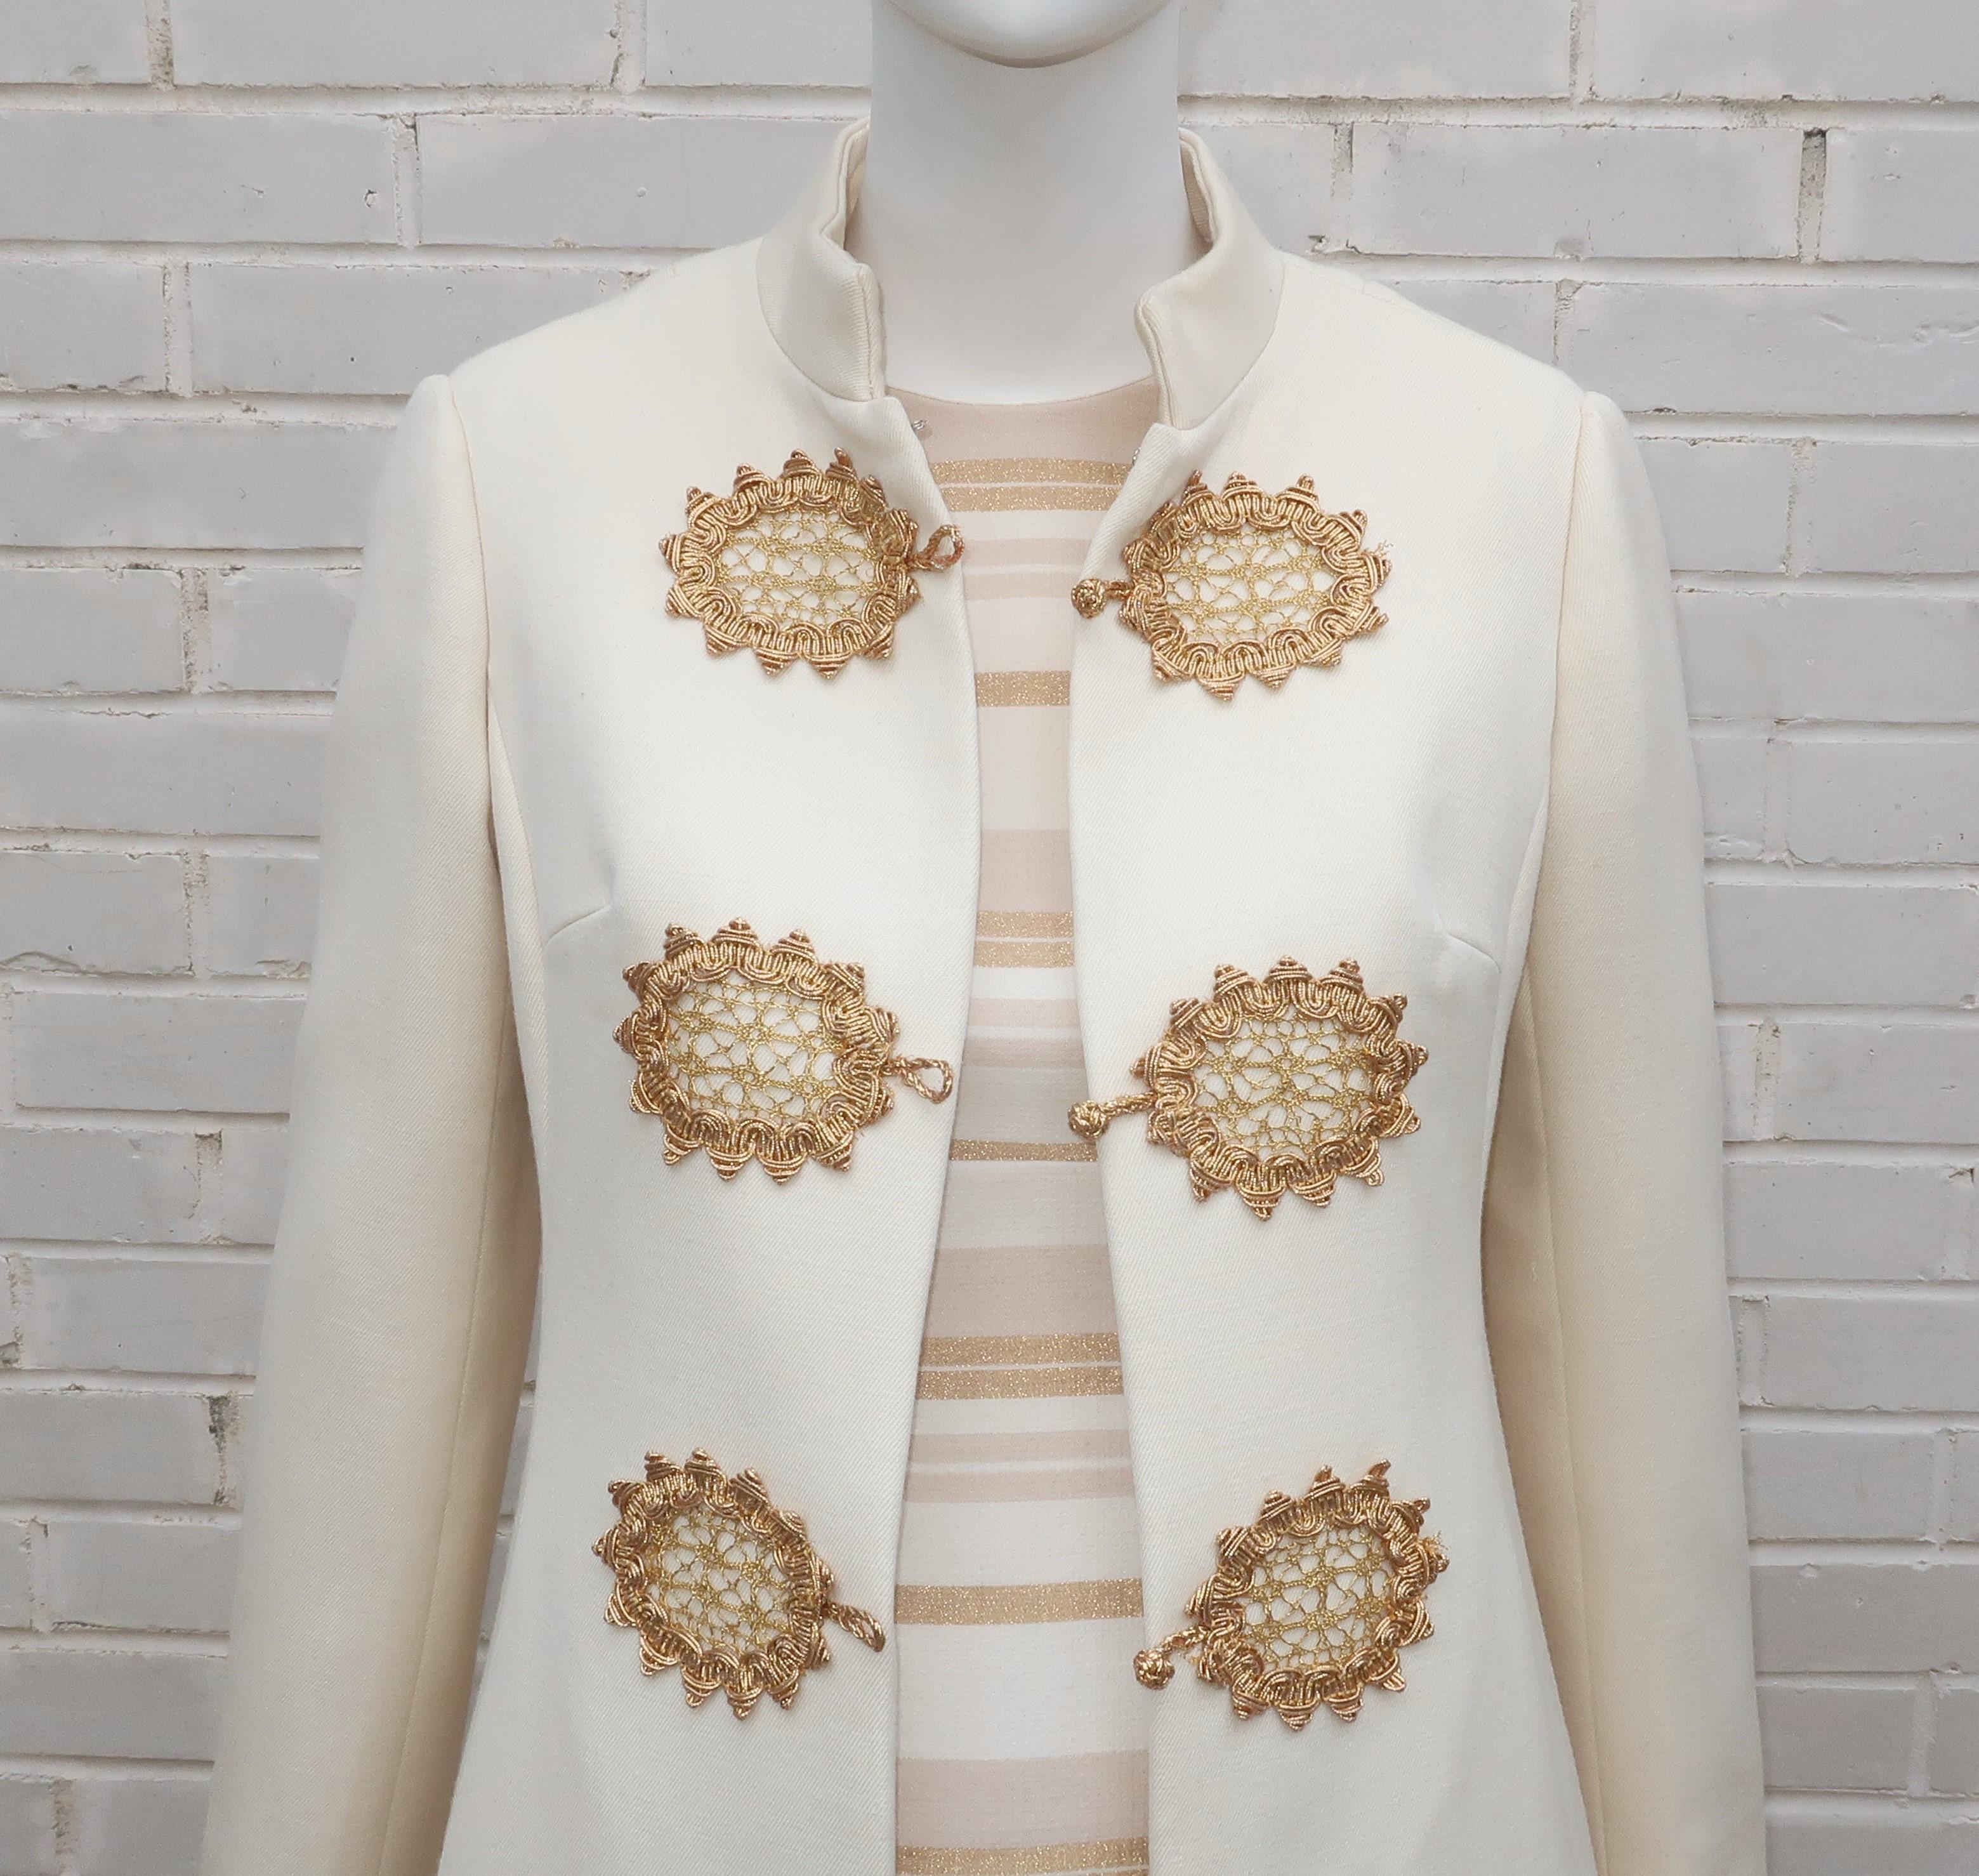 1960's Dynasty Cocktail-Kleid und Mantel Ensemble in einer Wollmischung Winter weiß Stoff mit metallischen Gold Akzente.  Der fabelhafte Mantel im Nehru-Stil ist vorne geknöpft und mit goldfarbenen, geflochtenen Froschverschlüssen und versteckten